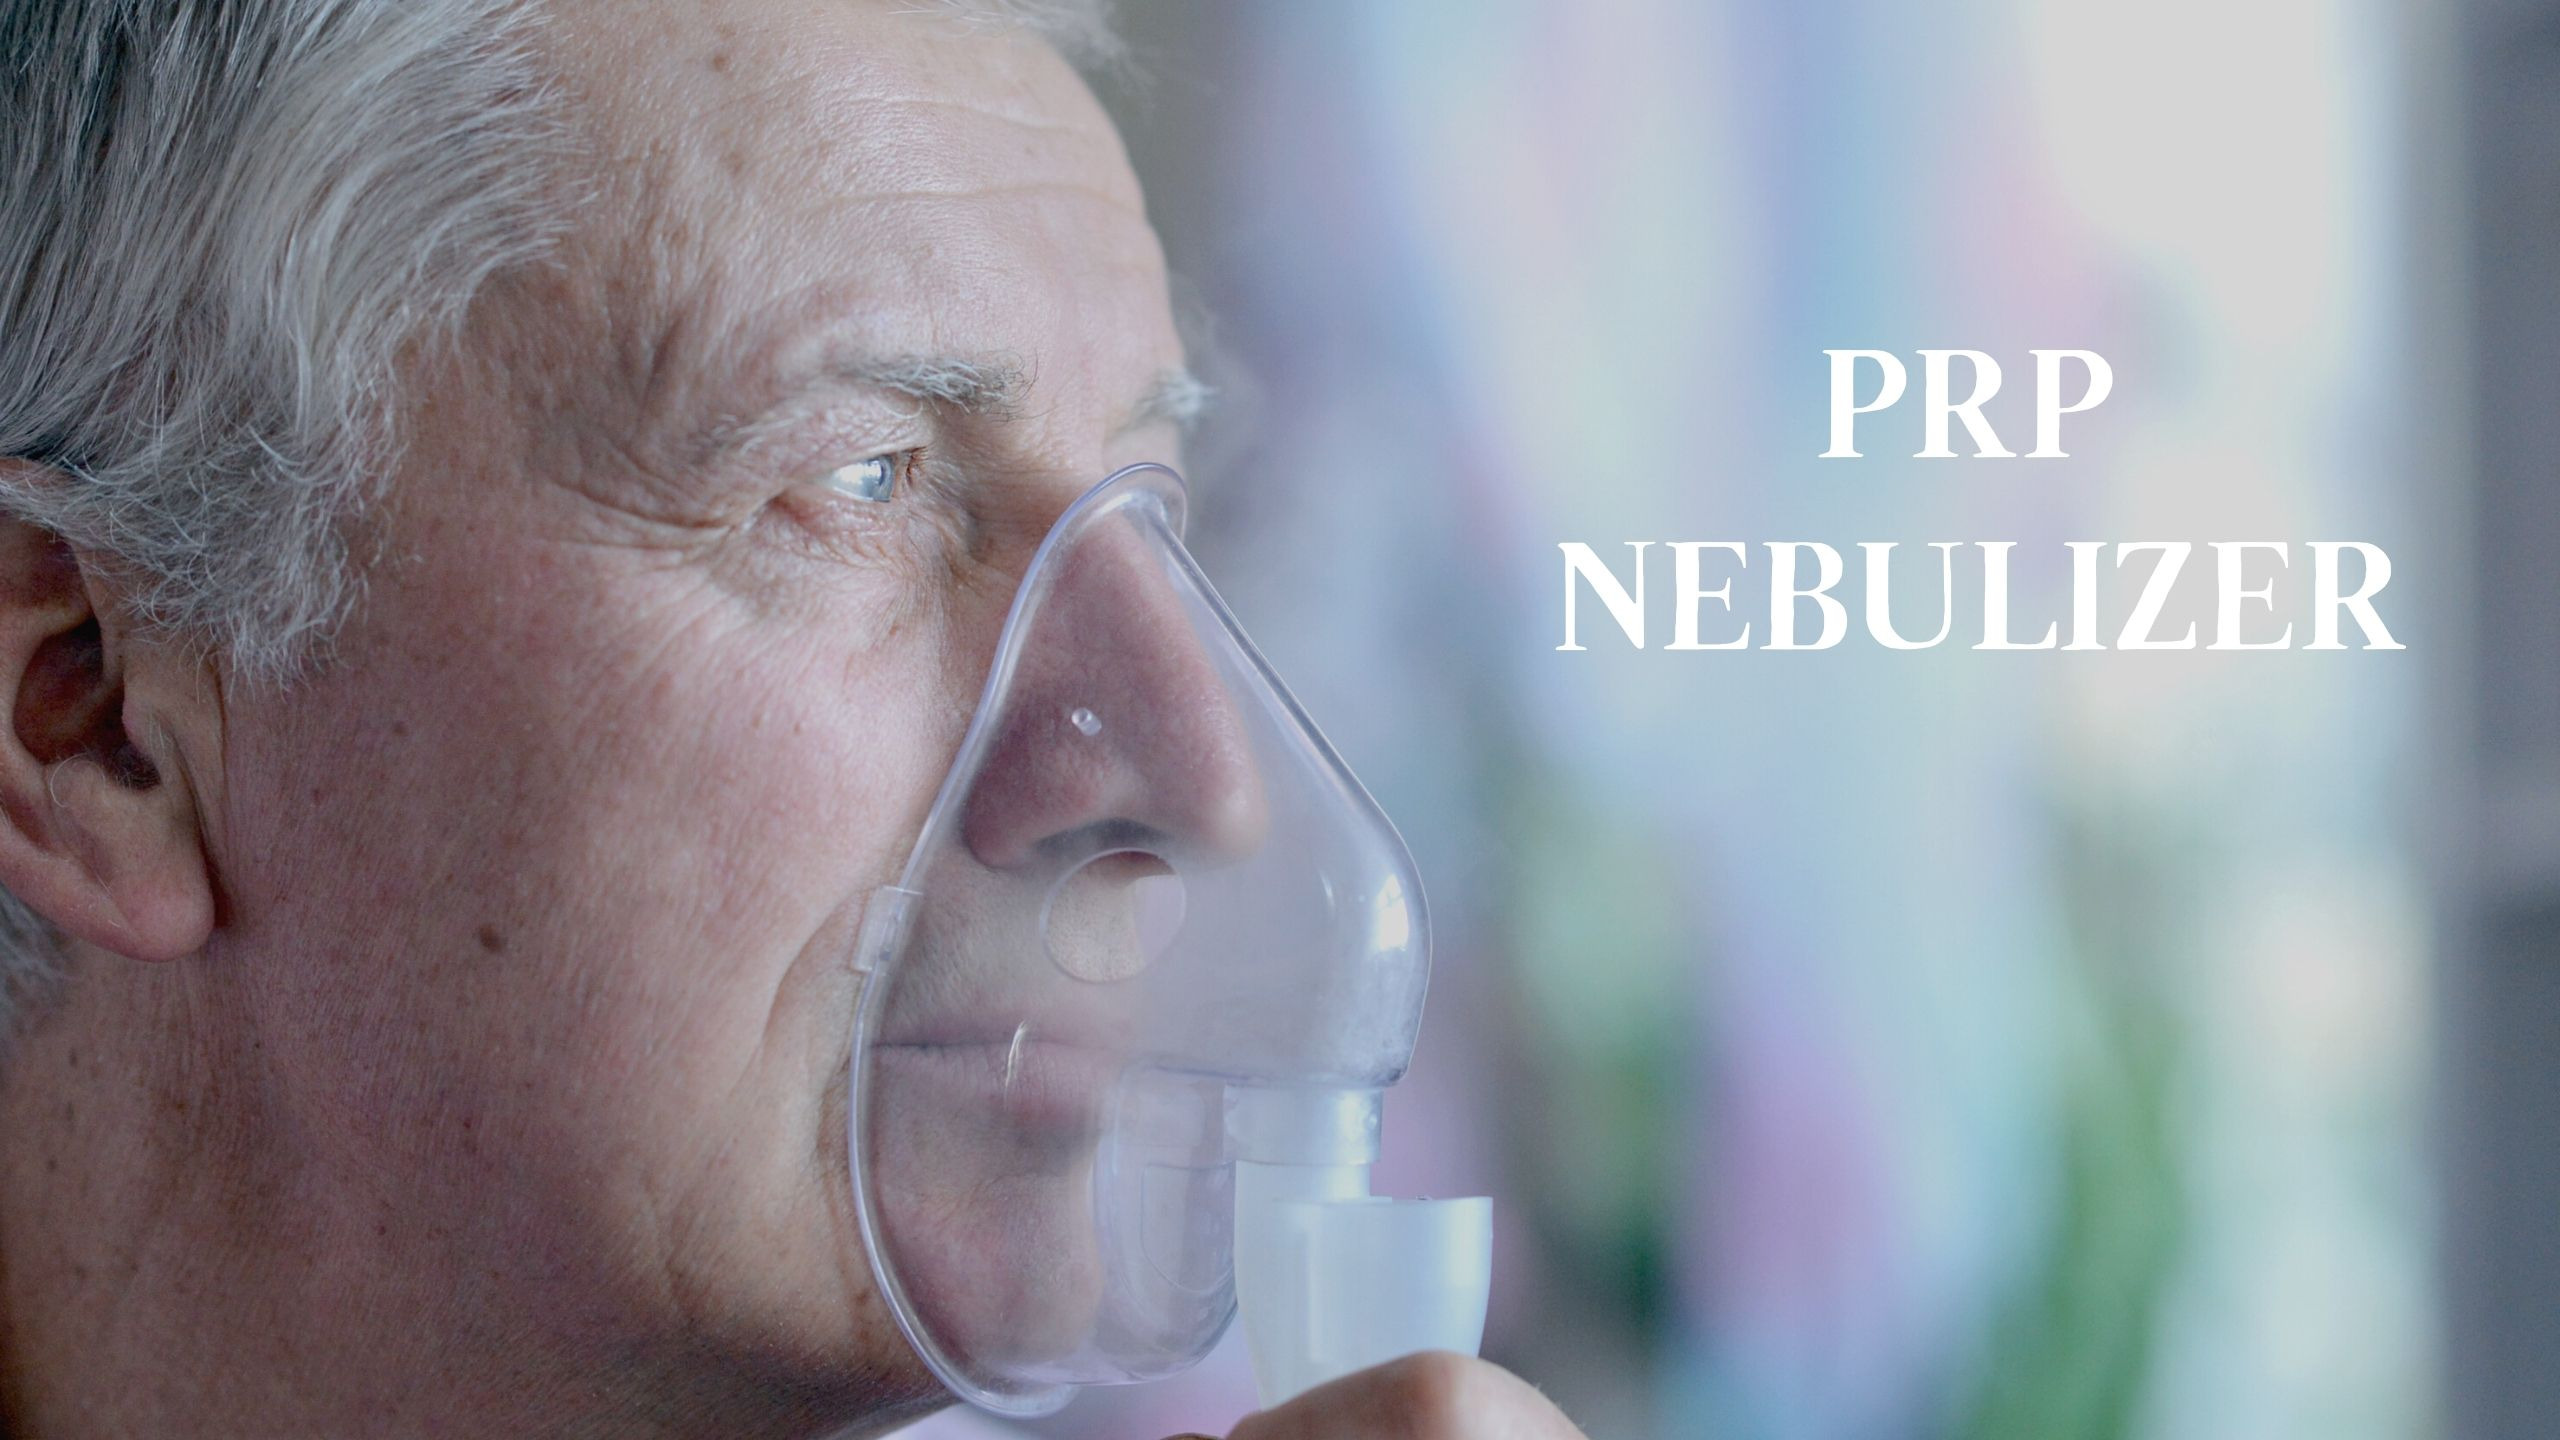 Nebulizatorul PRP pentru bolile pulmonare - o metodă inovatoare de tratament